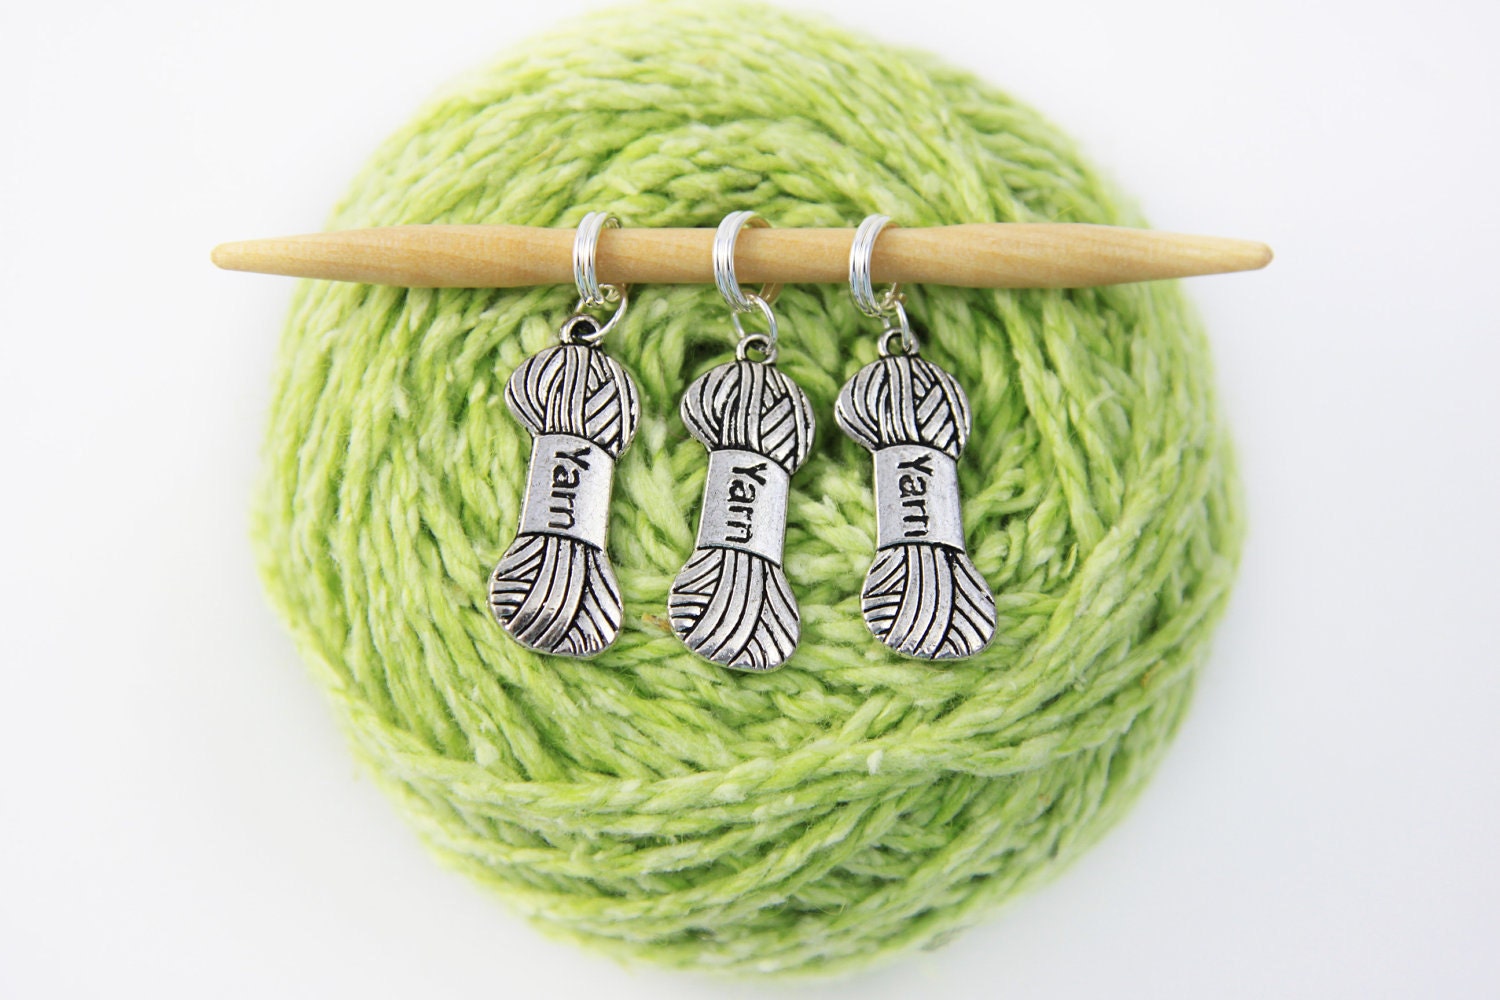 6 Knitting Stitch Markers -Yarn